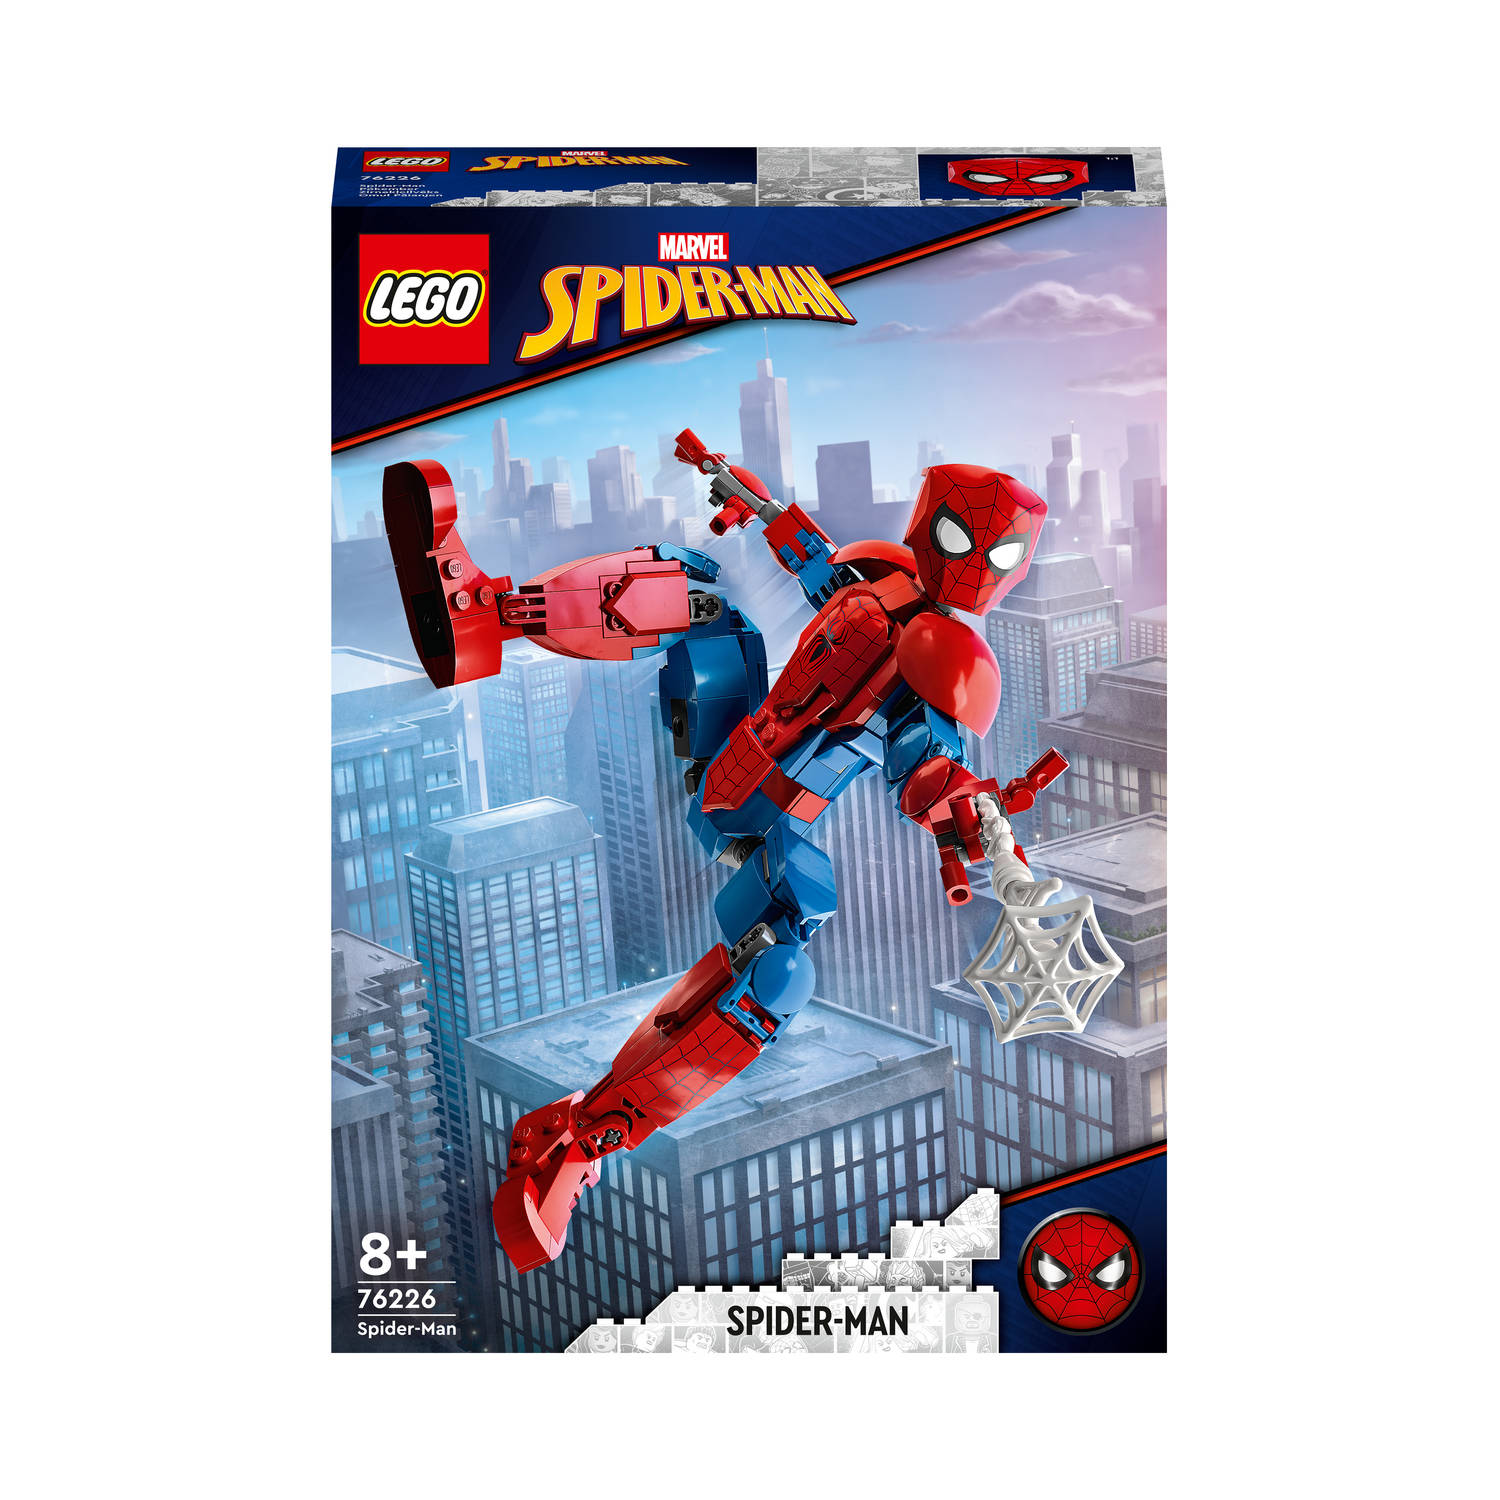 LEGO® MARVEL SUPER HEROES 76226 Spider-Man figuur